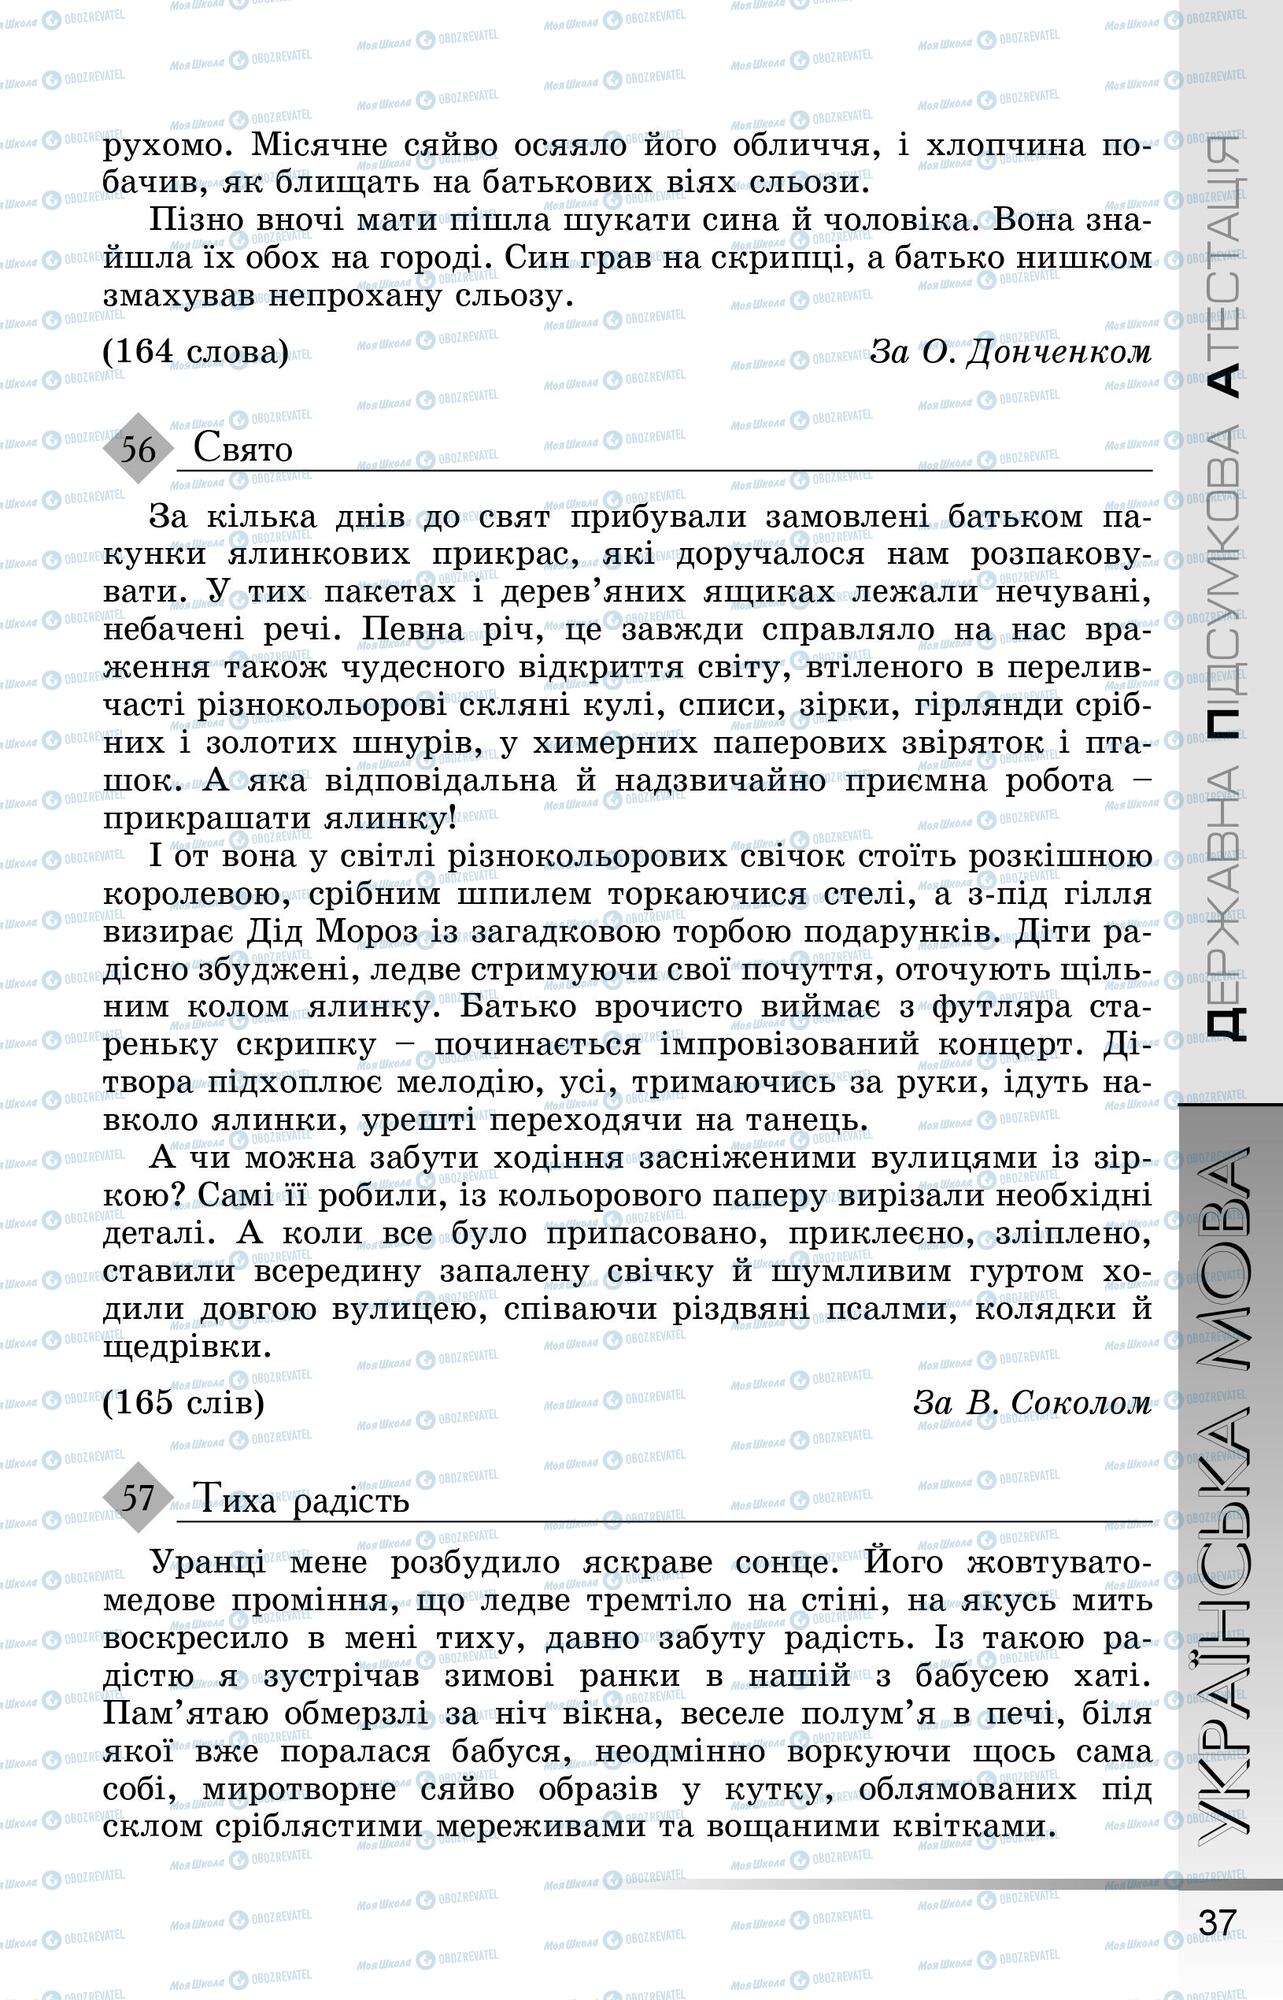 ДПА Укр мова 9 класс страница 0038